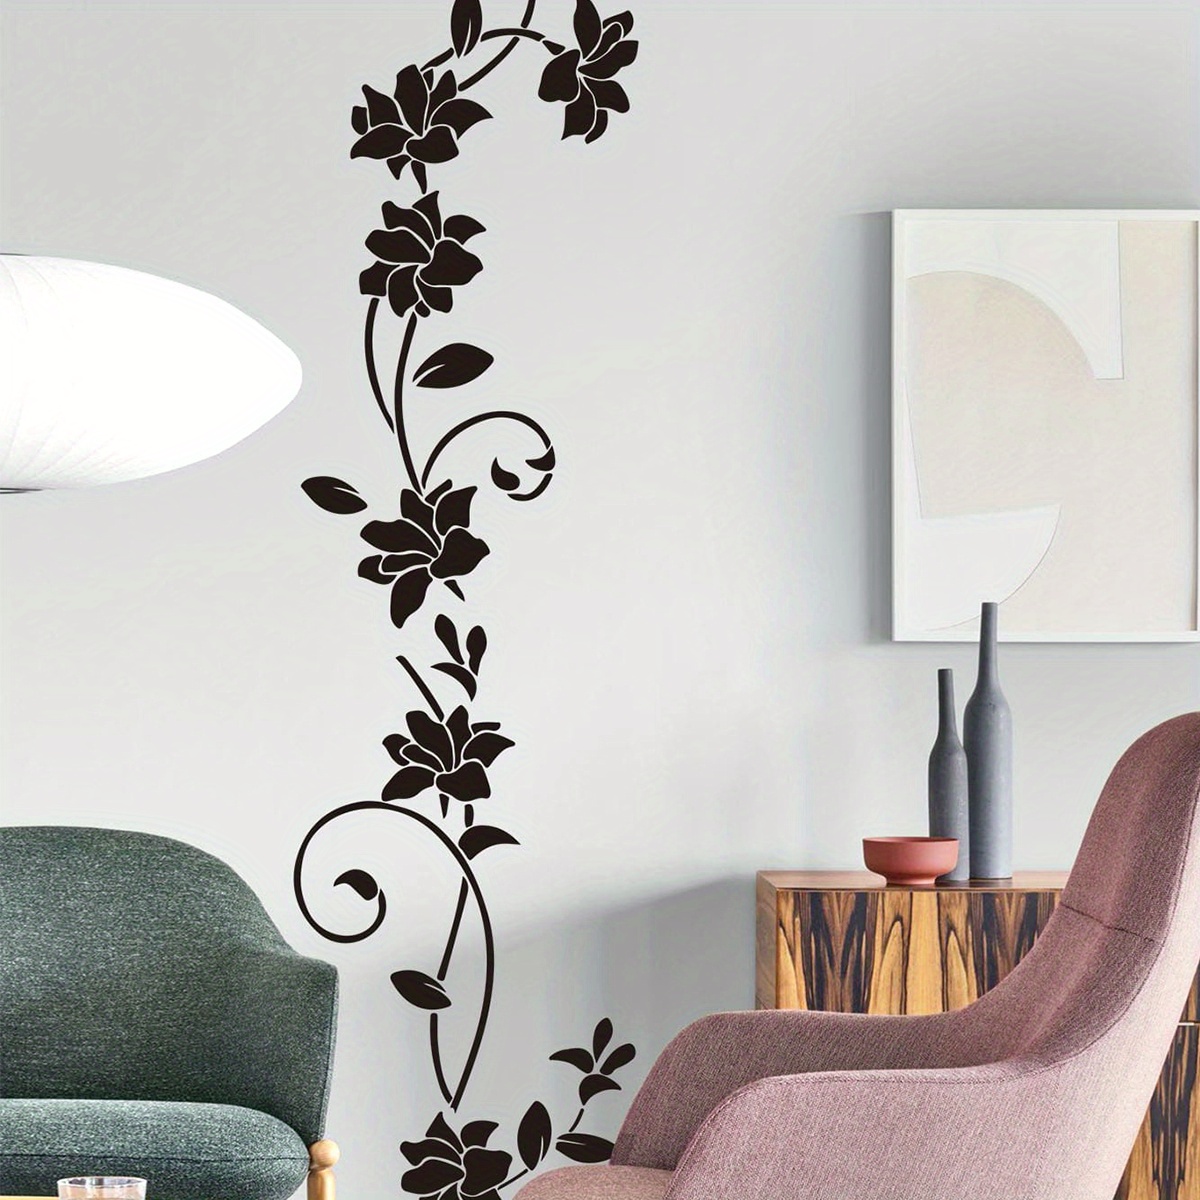 Flower Vine Wall Stickers Living room Mural Decorations Waterproof Black